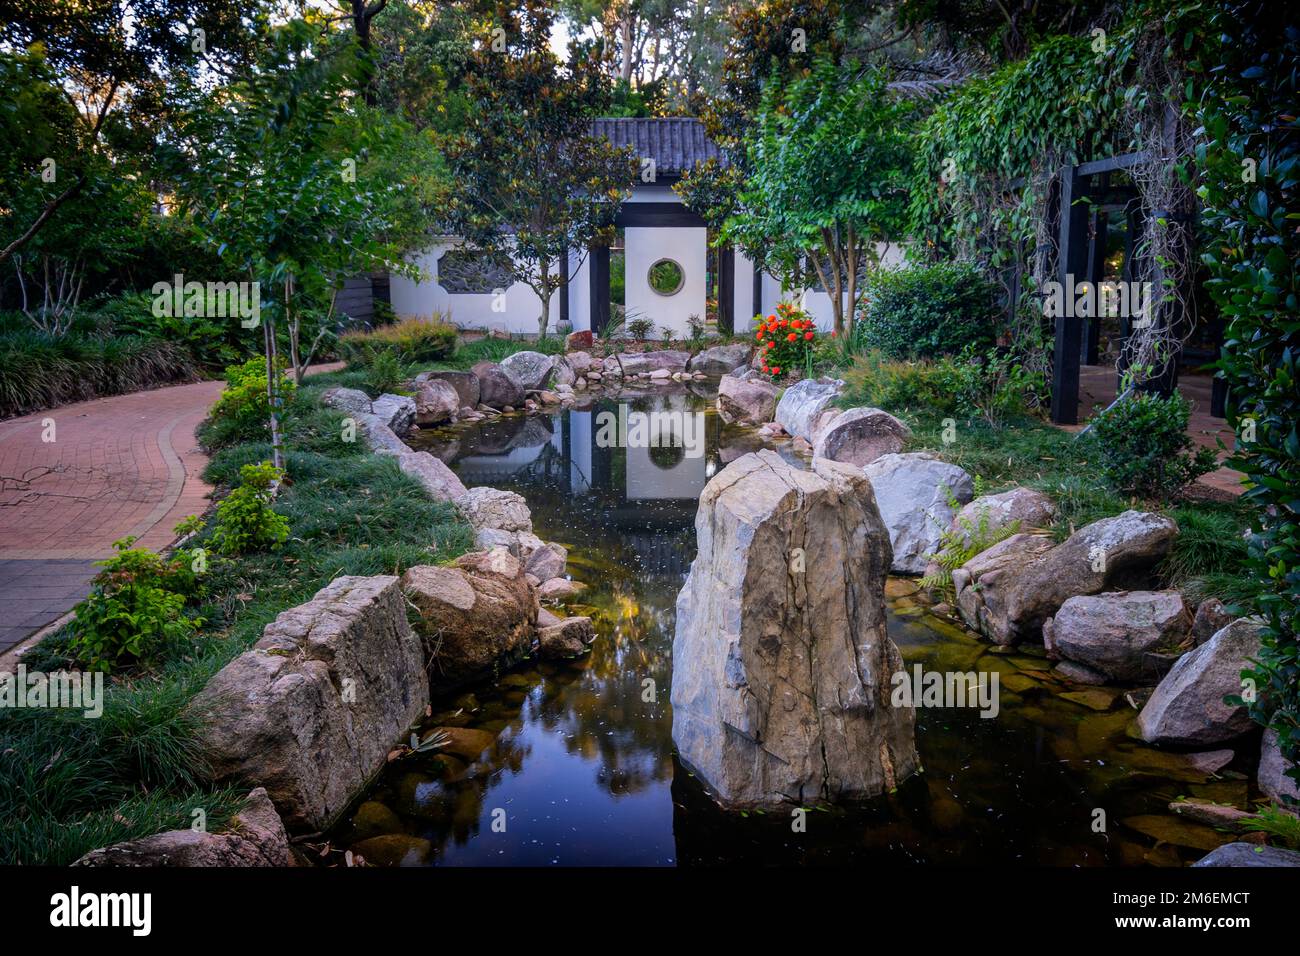 L'eau comprend un jardin formel d'inspiration chinoise, une porte de lune et un jardin zen. Hervey Bay Botanic Gardens, Urangan Hervey Bay Queensland Australie Banque D'Images